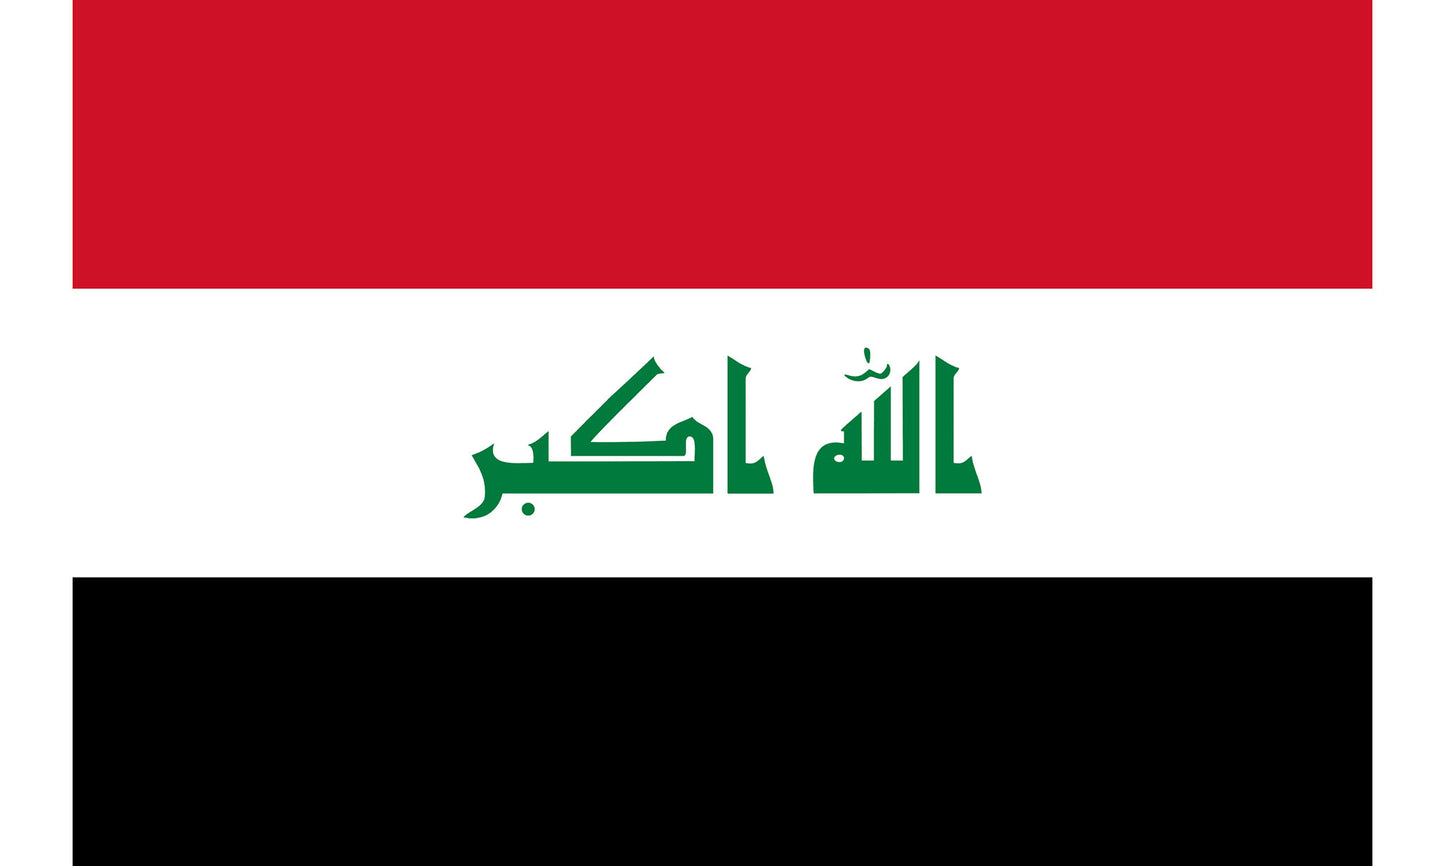 INR-IRQ-15x22-2 - государственный флаг Ирака, размер: 15х22 см, материал: атлас. Печать с двух сторон. Подставка и шток приобретаются отдельно